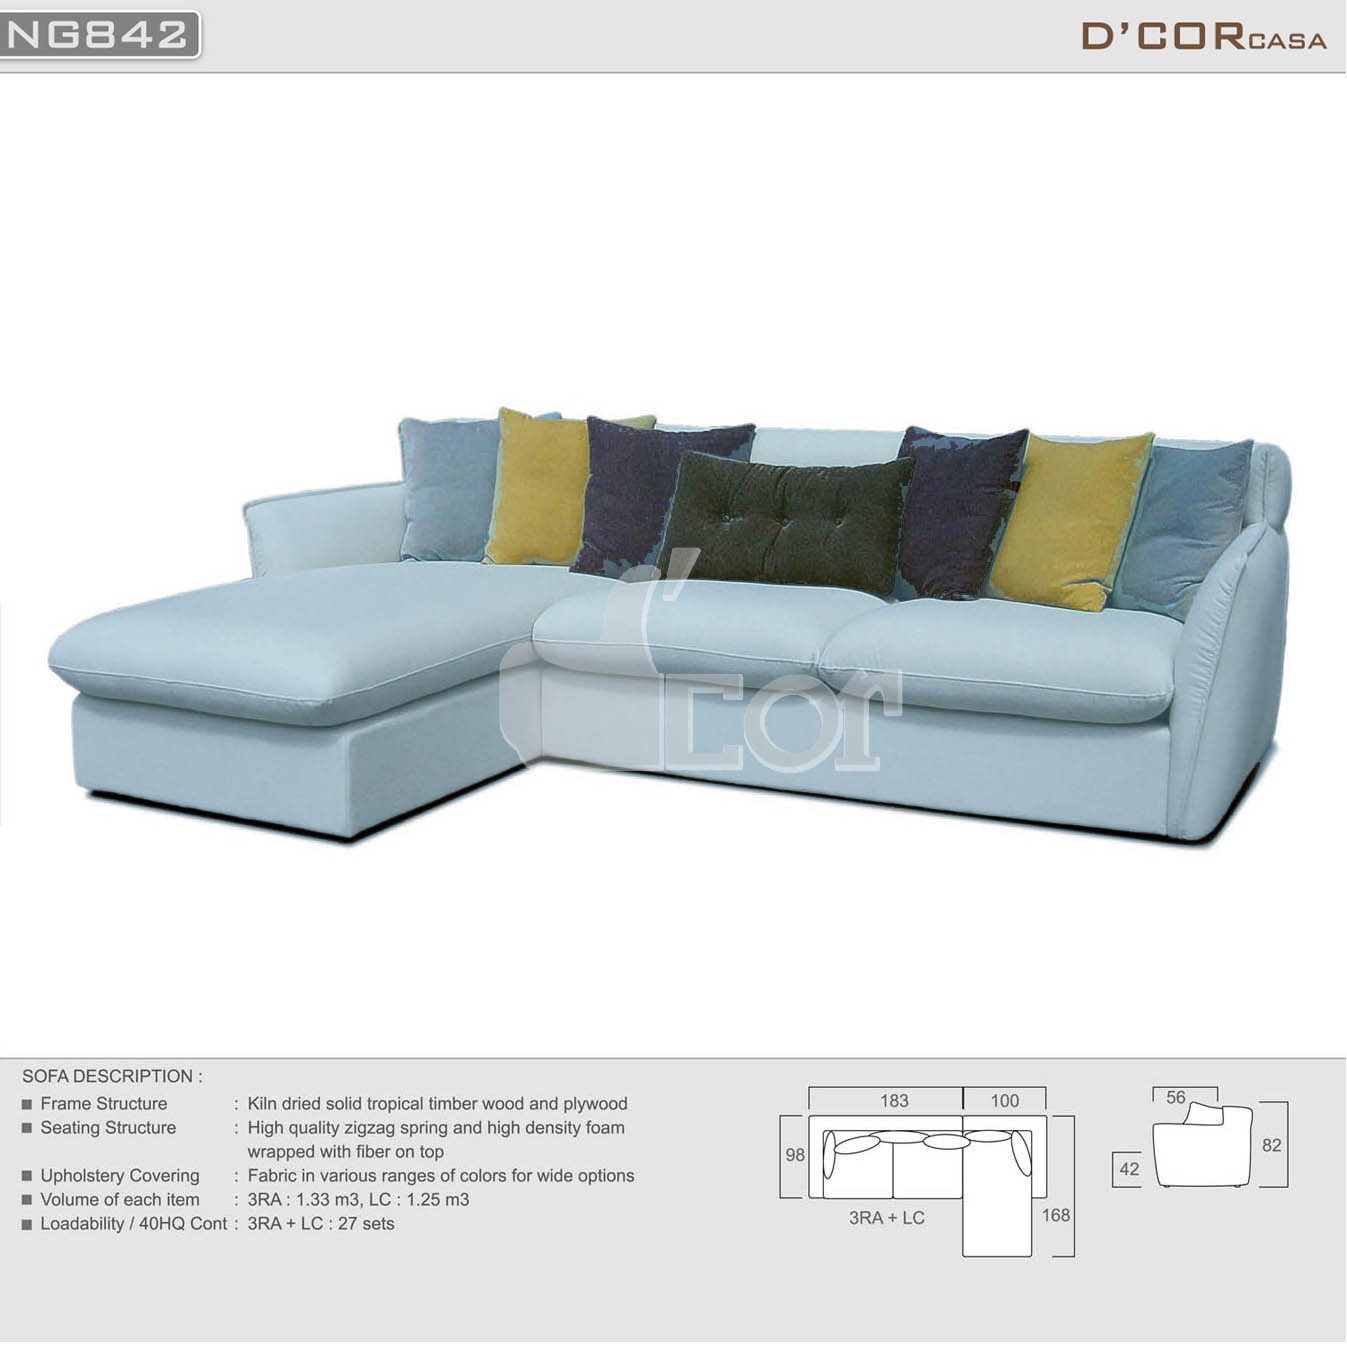 Mẫu sofa nỉ đẹp hiện đại nhập khẩu Malaysia NG842 làm phòng khách rực rỡ